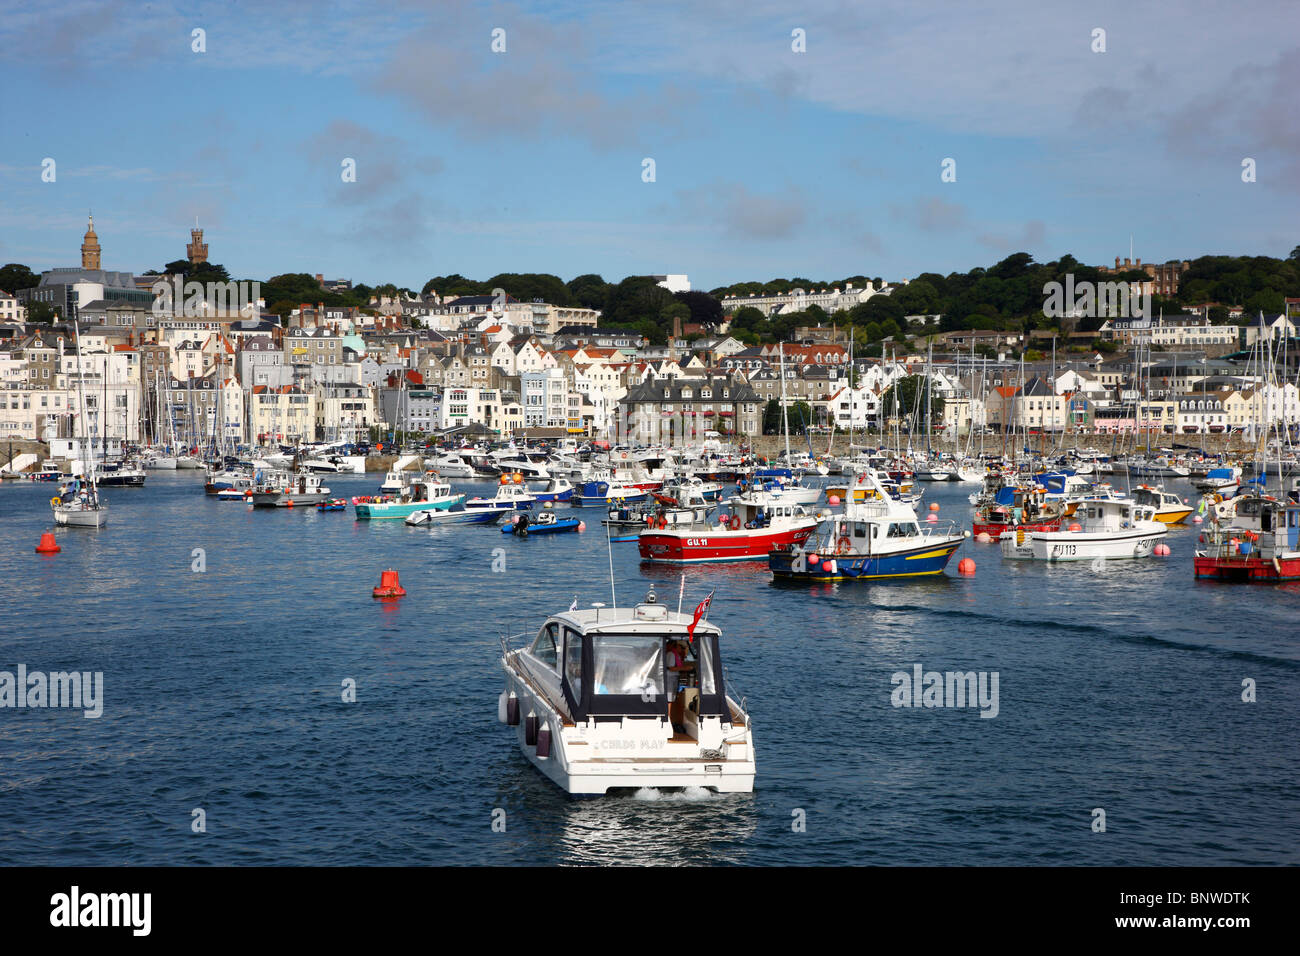 Hafen, Hafen von St. Peter Port, Guernsey, UK, Kanalinseln. Segelboote und Yachten in das Hafenbecken, Skyline der Stadt Stockfoto